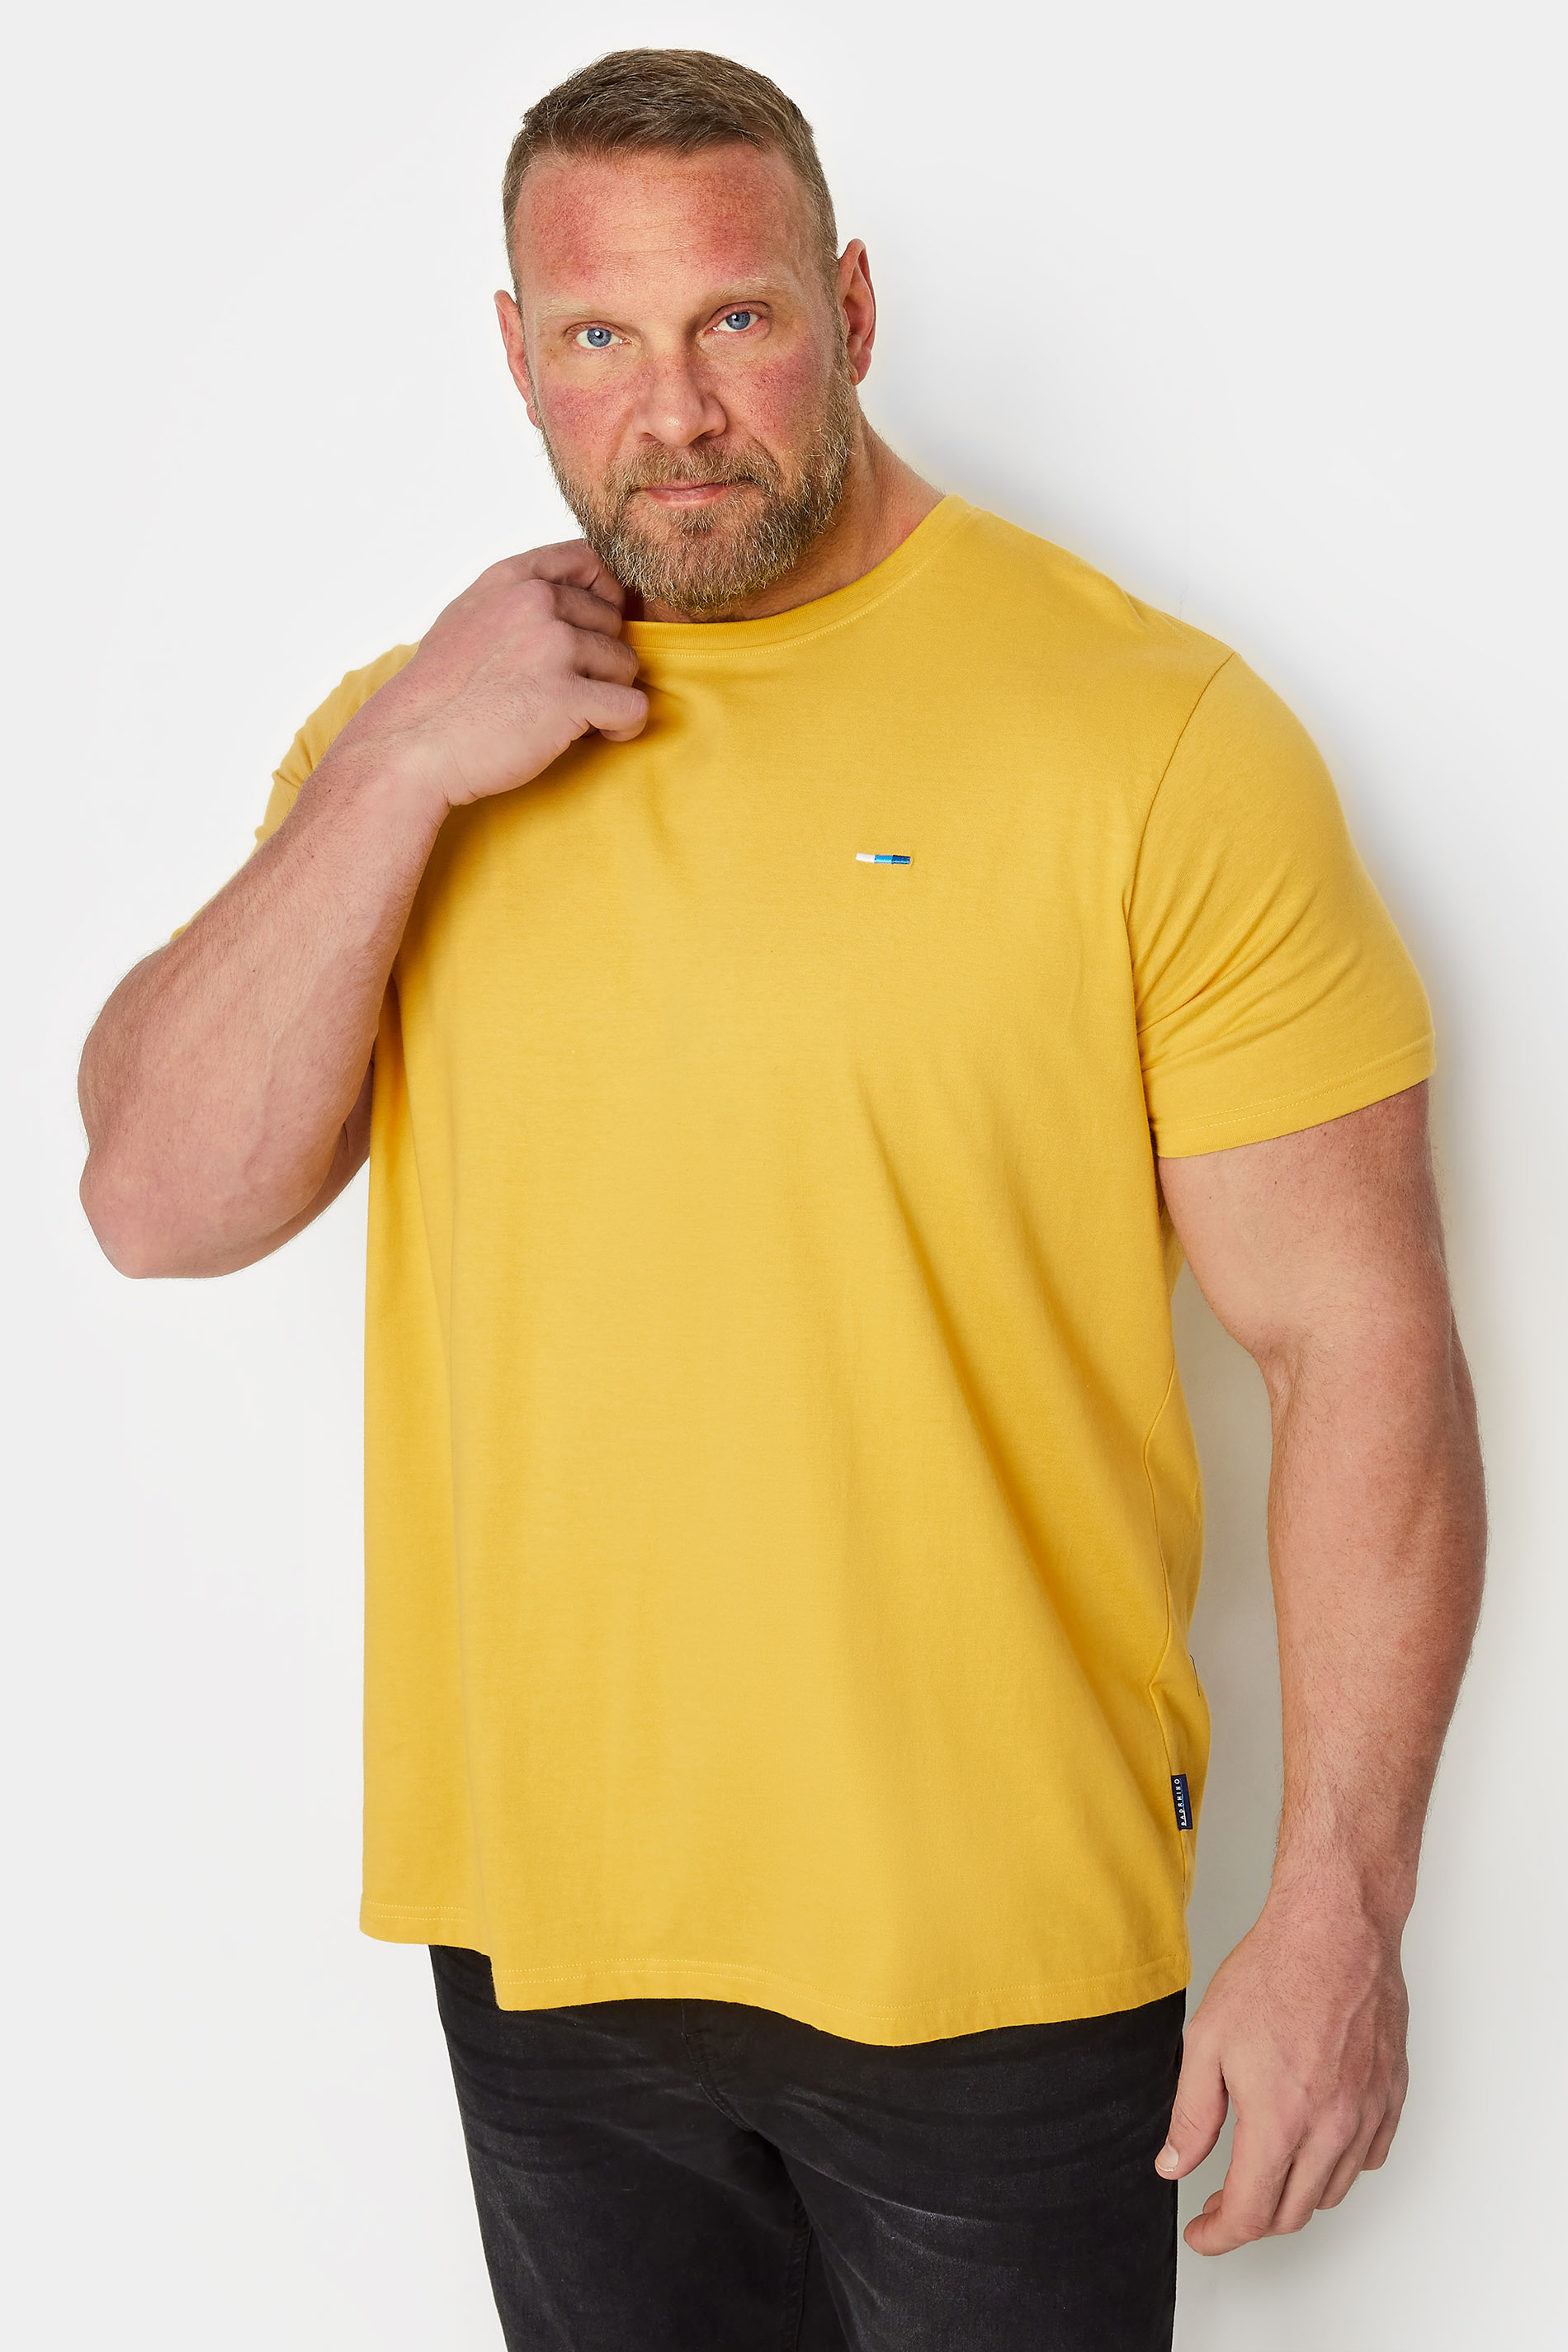 BadRhino Big & Tall Mustard Yellow Core T-Shirt | BadRhino 2